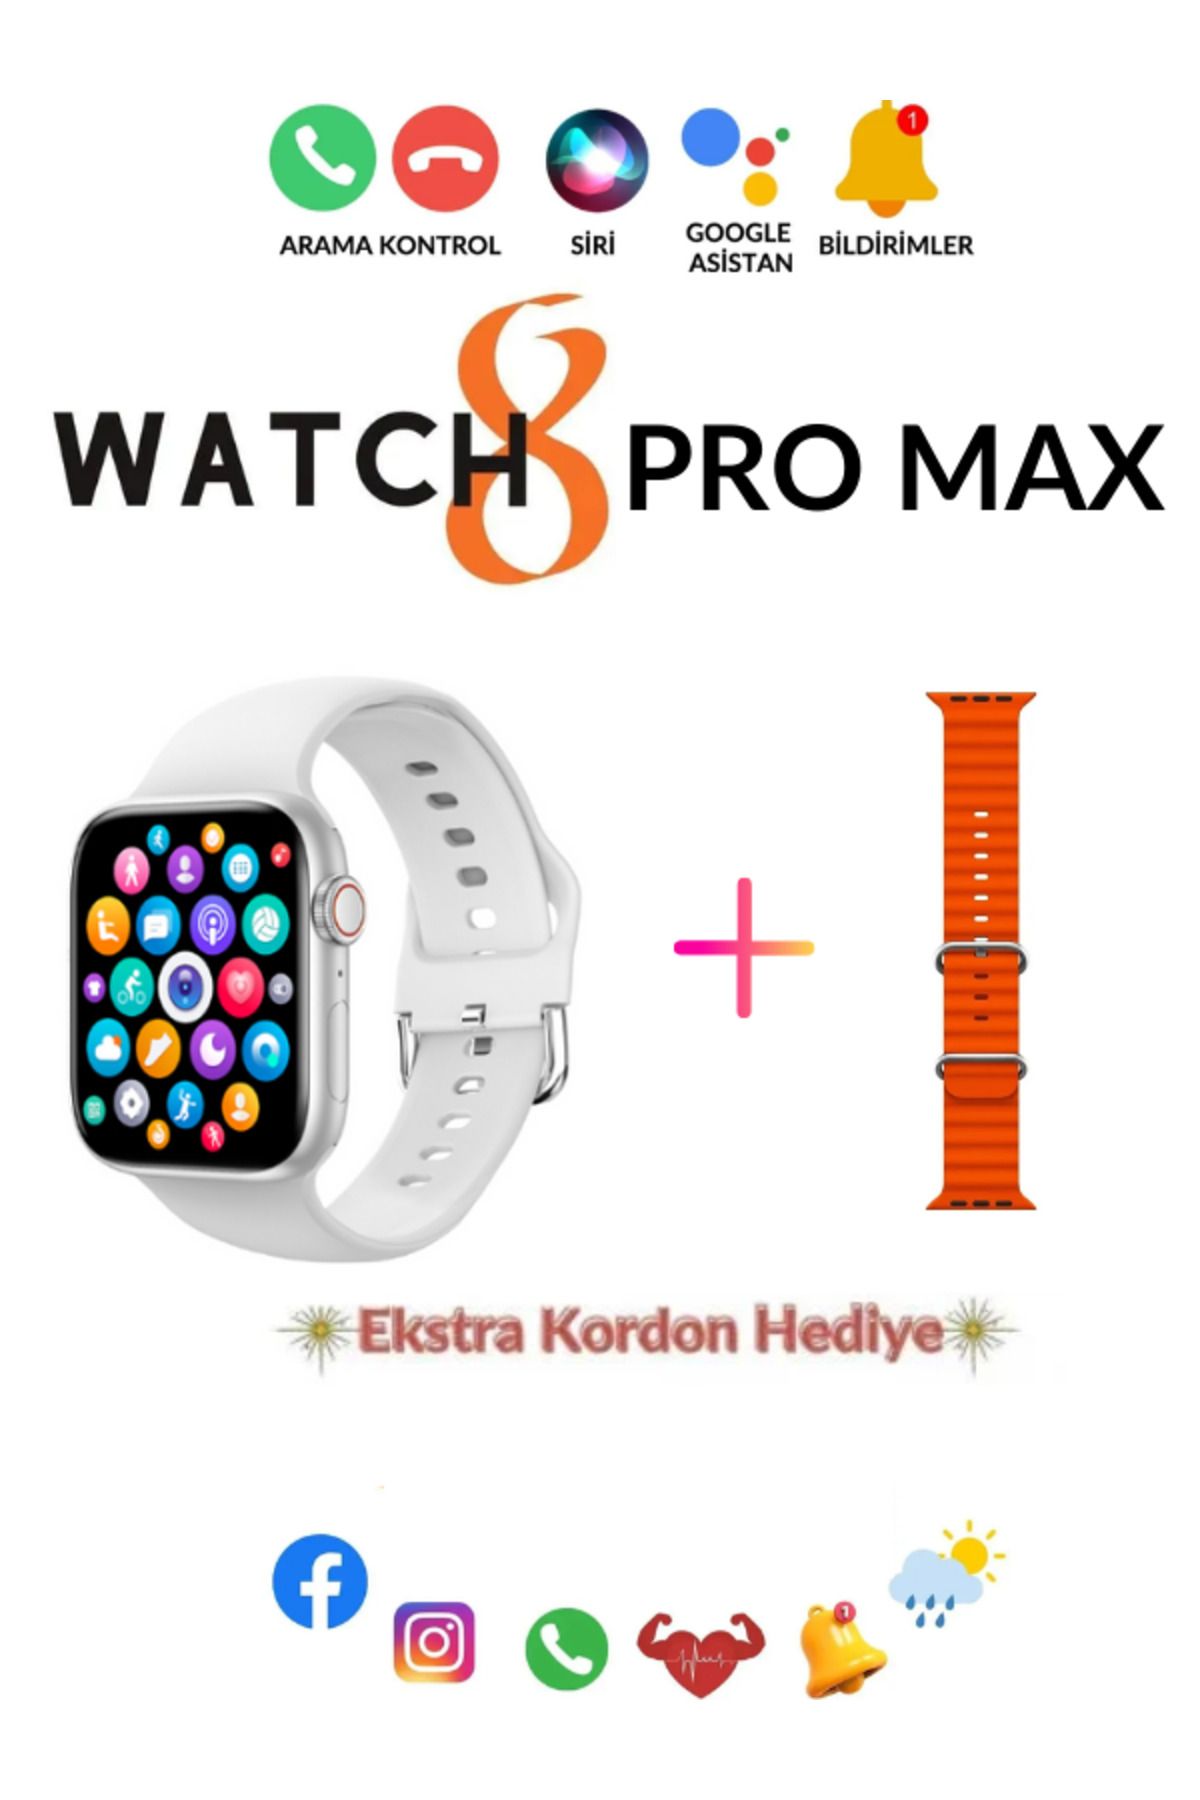 Teknoloji Gelsin Smart watch 8 Pro Max Akıllı Saat Bütün Telefonlar ile Uyumlu Türkçe Menü Saatten Konuşma Spor Mod